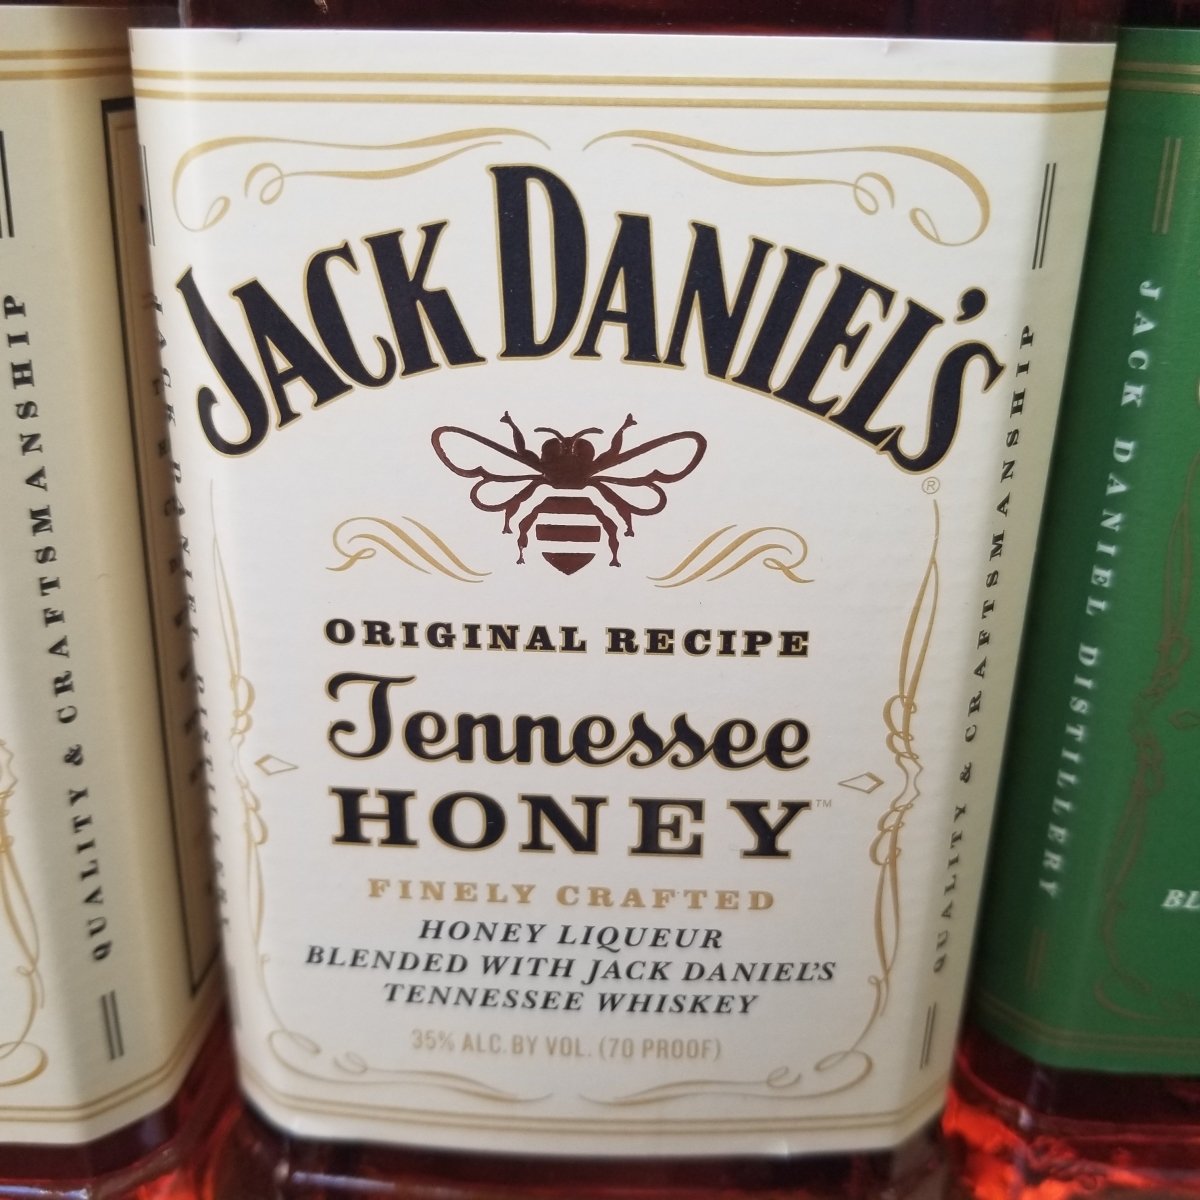 Jack Daniel's Tennessee Honey Whiskey - 375 ml bottle